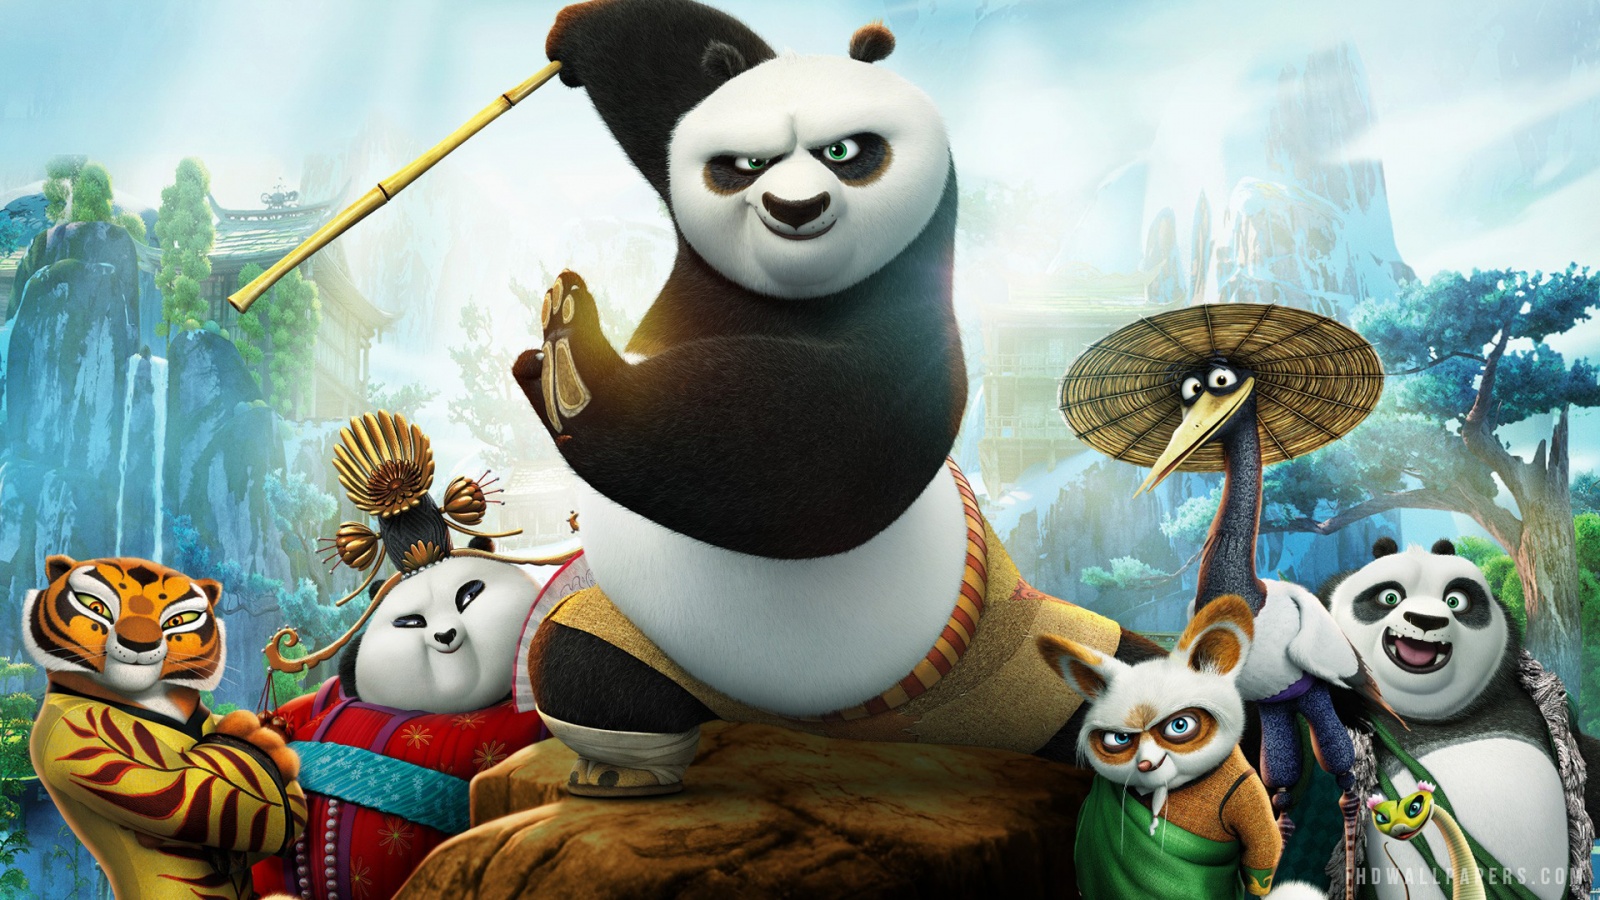 Nếu bạn yêu thích phim hoạt hình và võ thuật thì Kung Fu Panda 3 là một lựa chọn tuyệt vời. Phần thứ ba này không chỉ có các nhân vật yêu thích của chúng ta như Po và các võ sư thú vị mà còn có đồ họa tuyệt đẹp và câu chuyện đầy cảm xúc. Hãy xem hình ảnh liên quan để khám phá thế giới đầy sắc màu của Kung Fu Panda